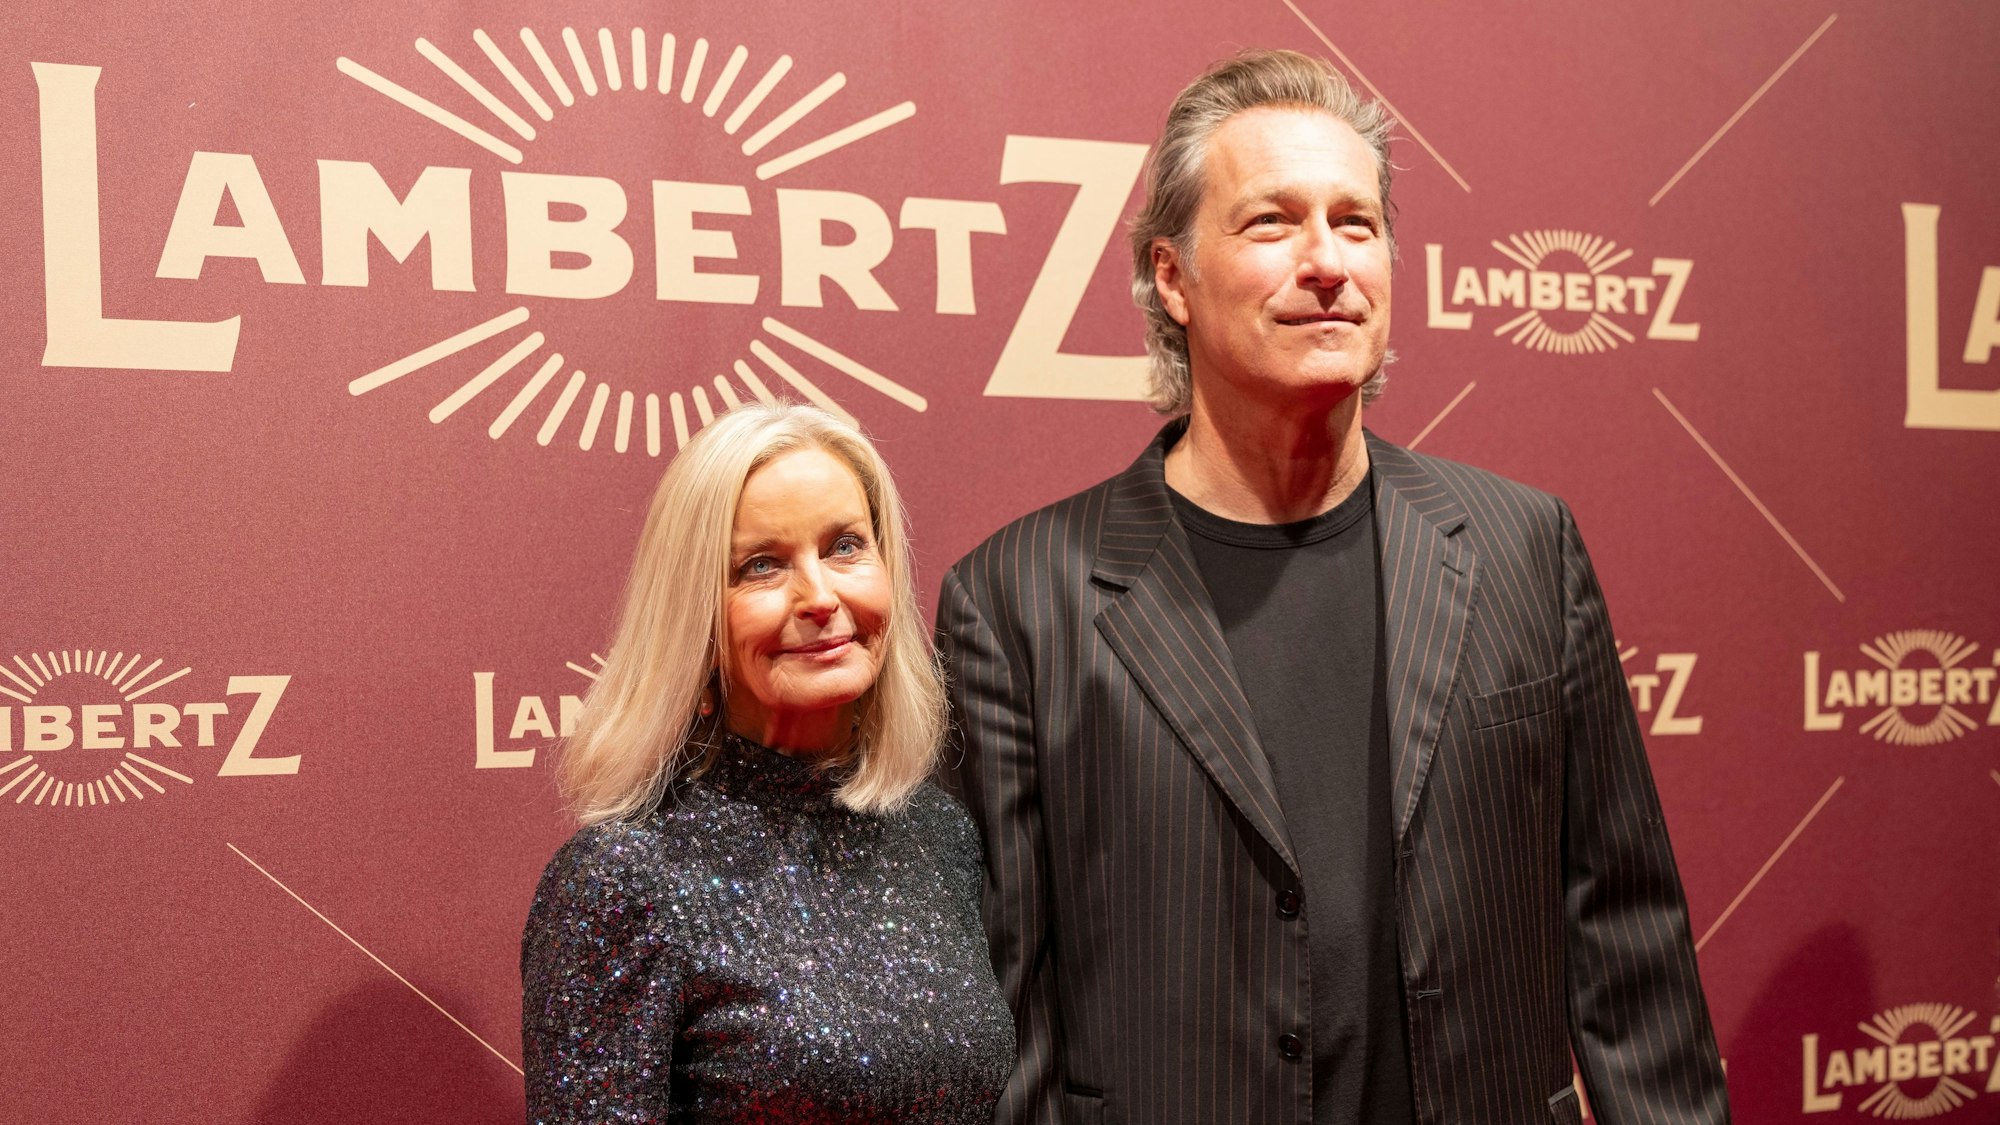 John Corbett steht mit Partnerin Bo Derek vor einer roten Wand, auf der Lambertz steht.